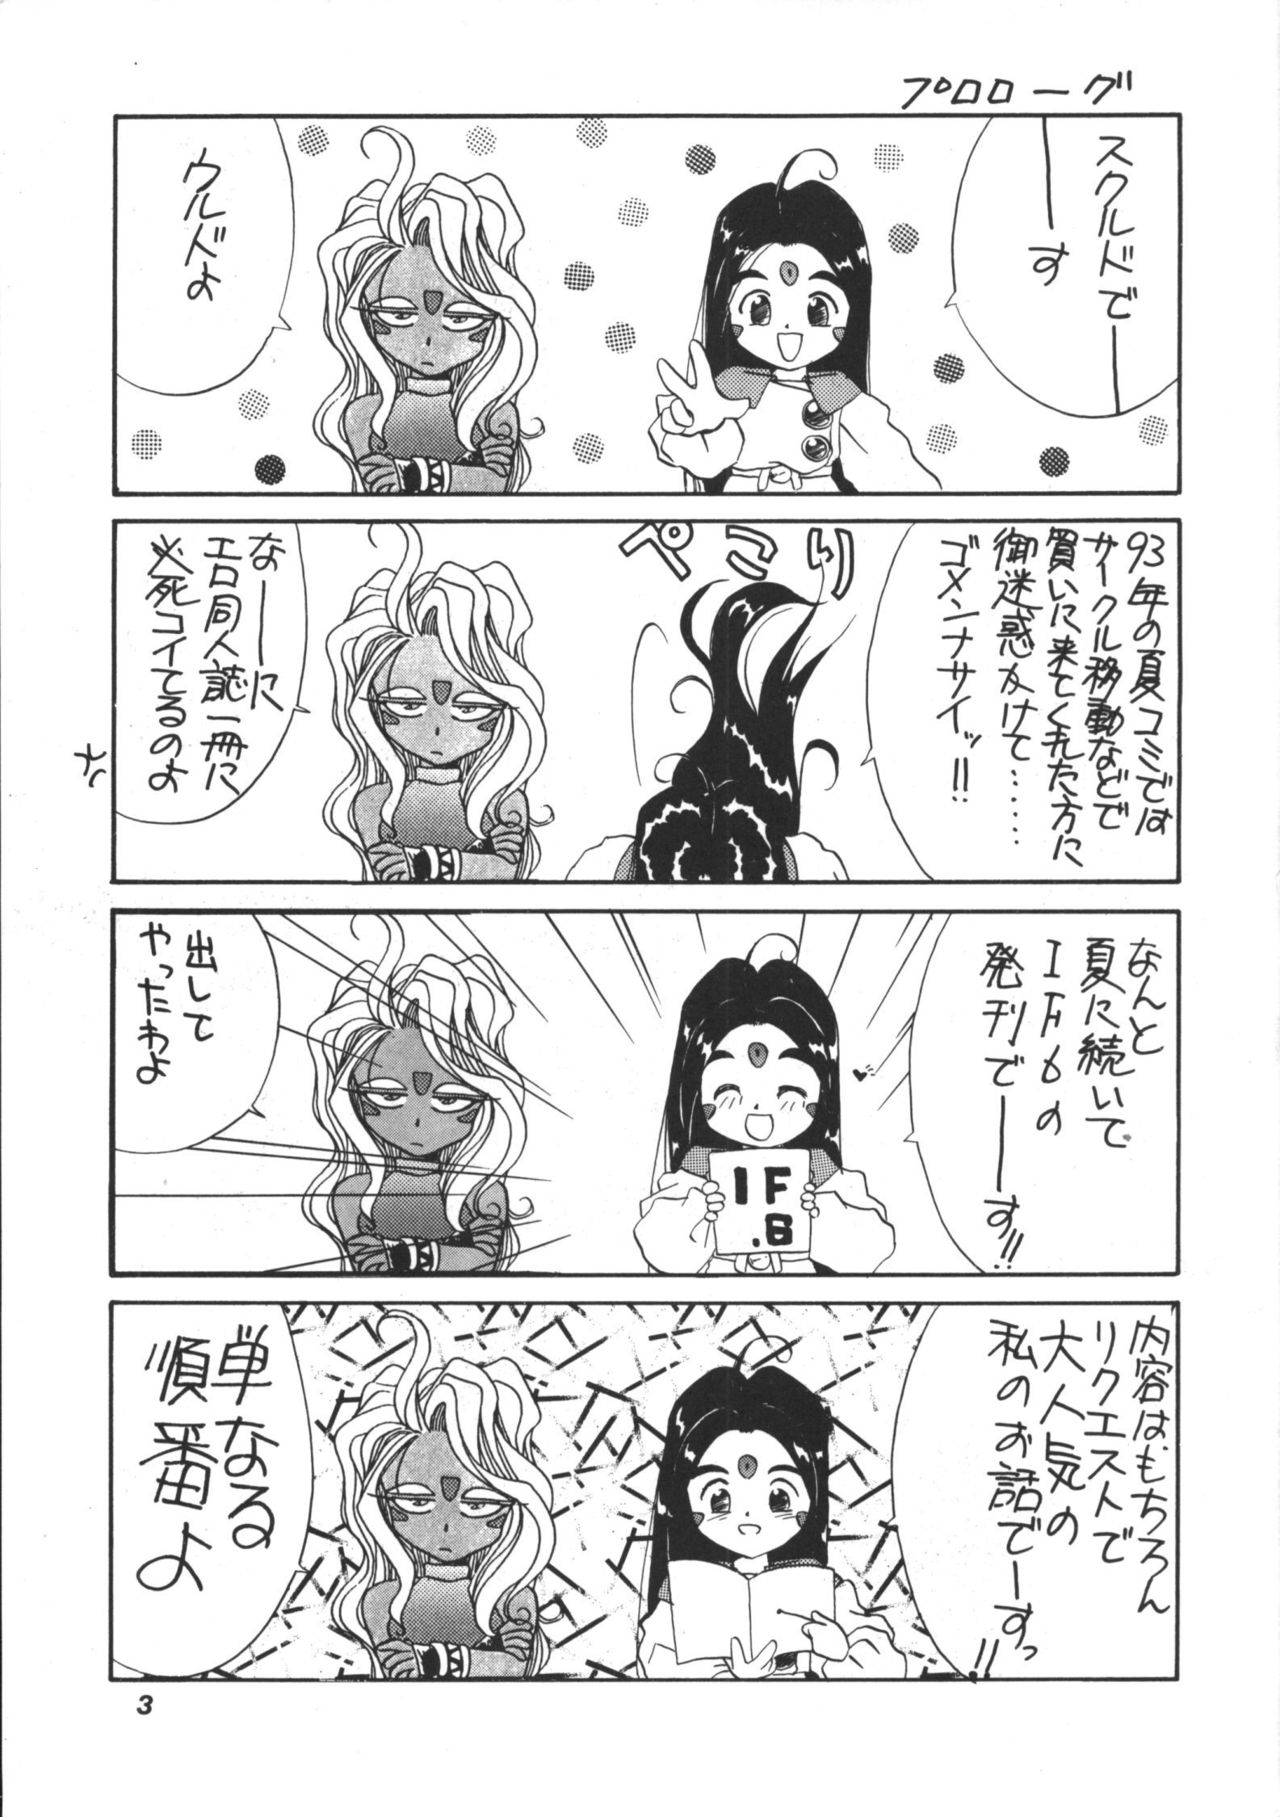 [Tenchuugumi] IF 6 (Ah! Megami-sama / Ah! My Goddess!) 